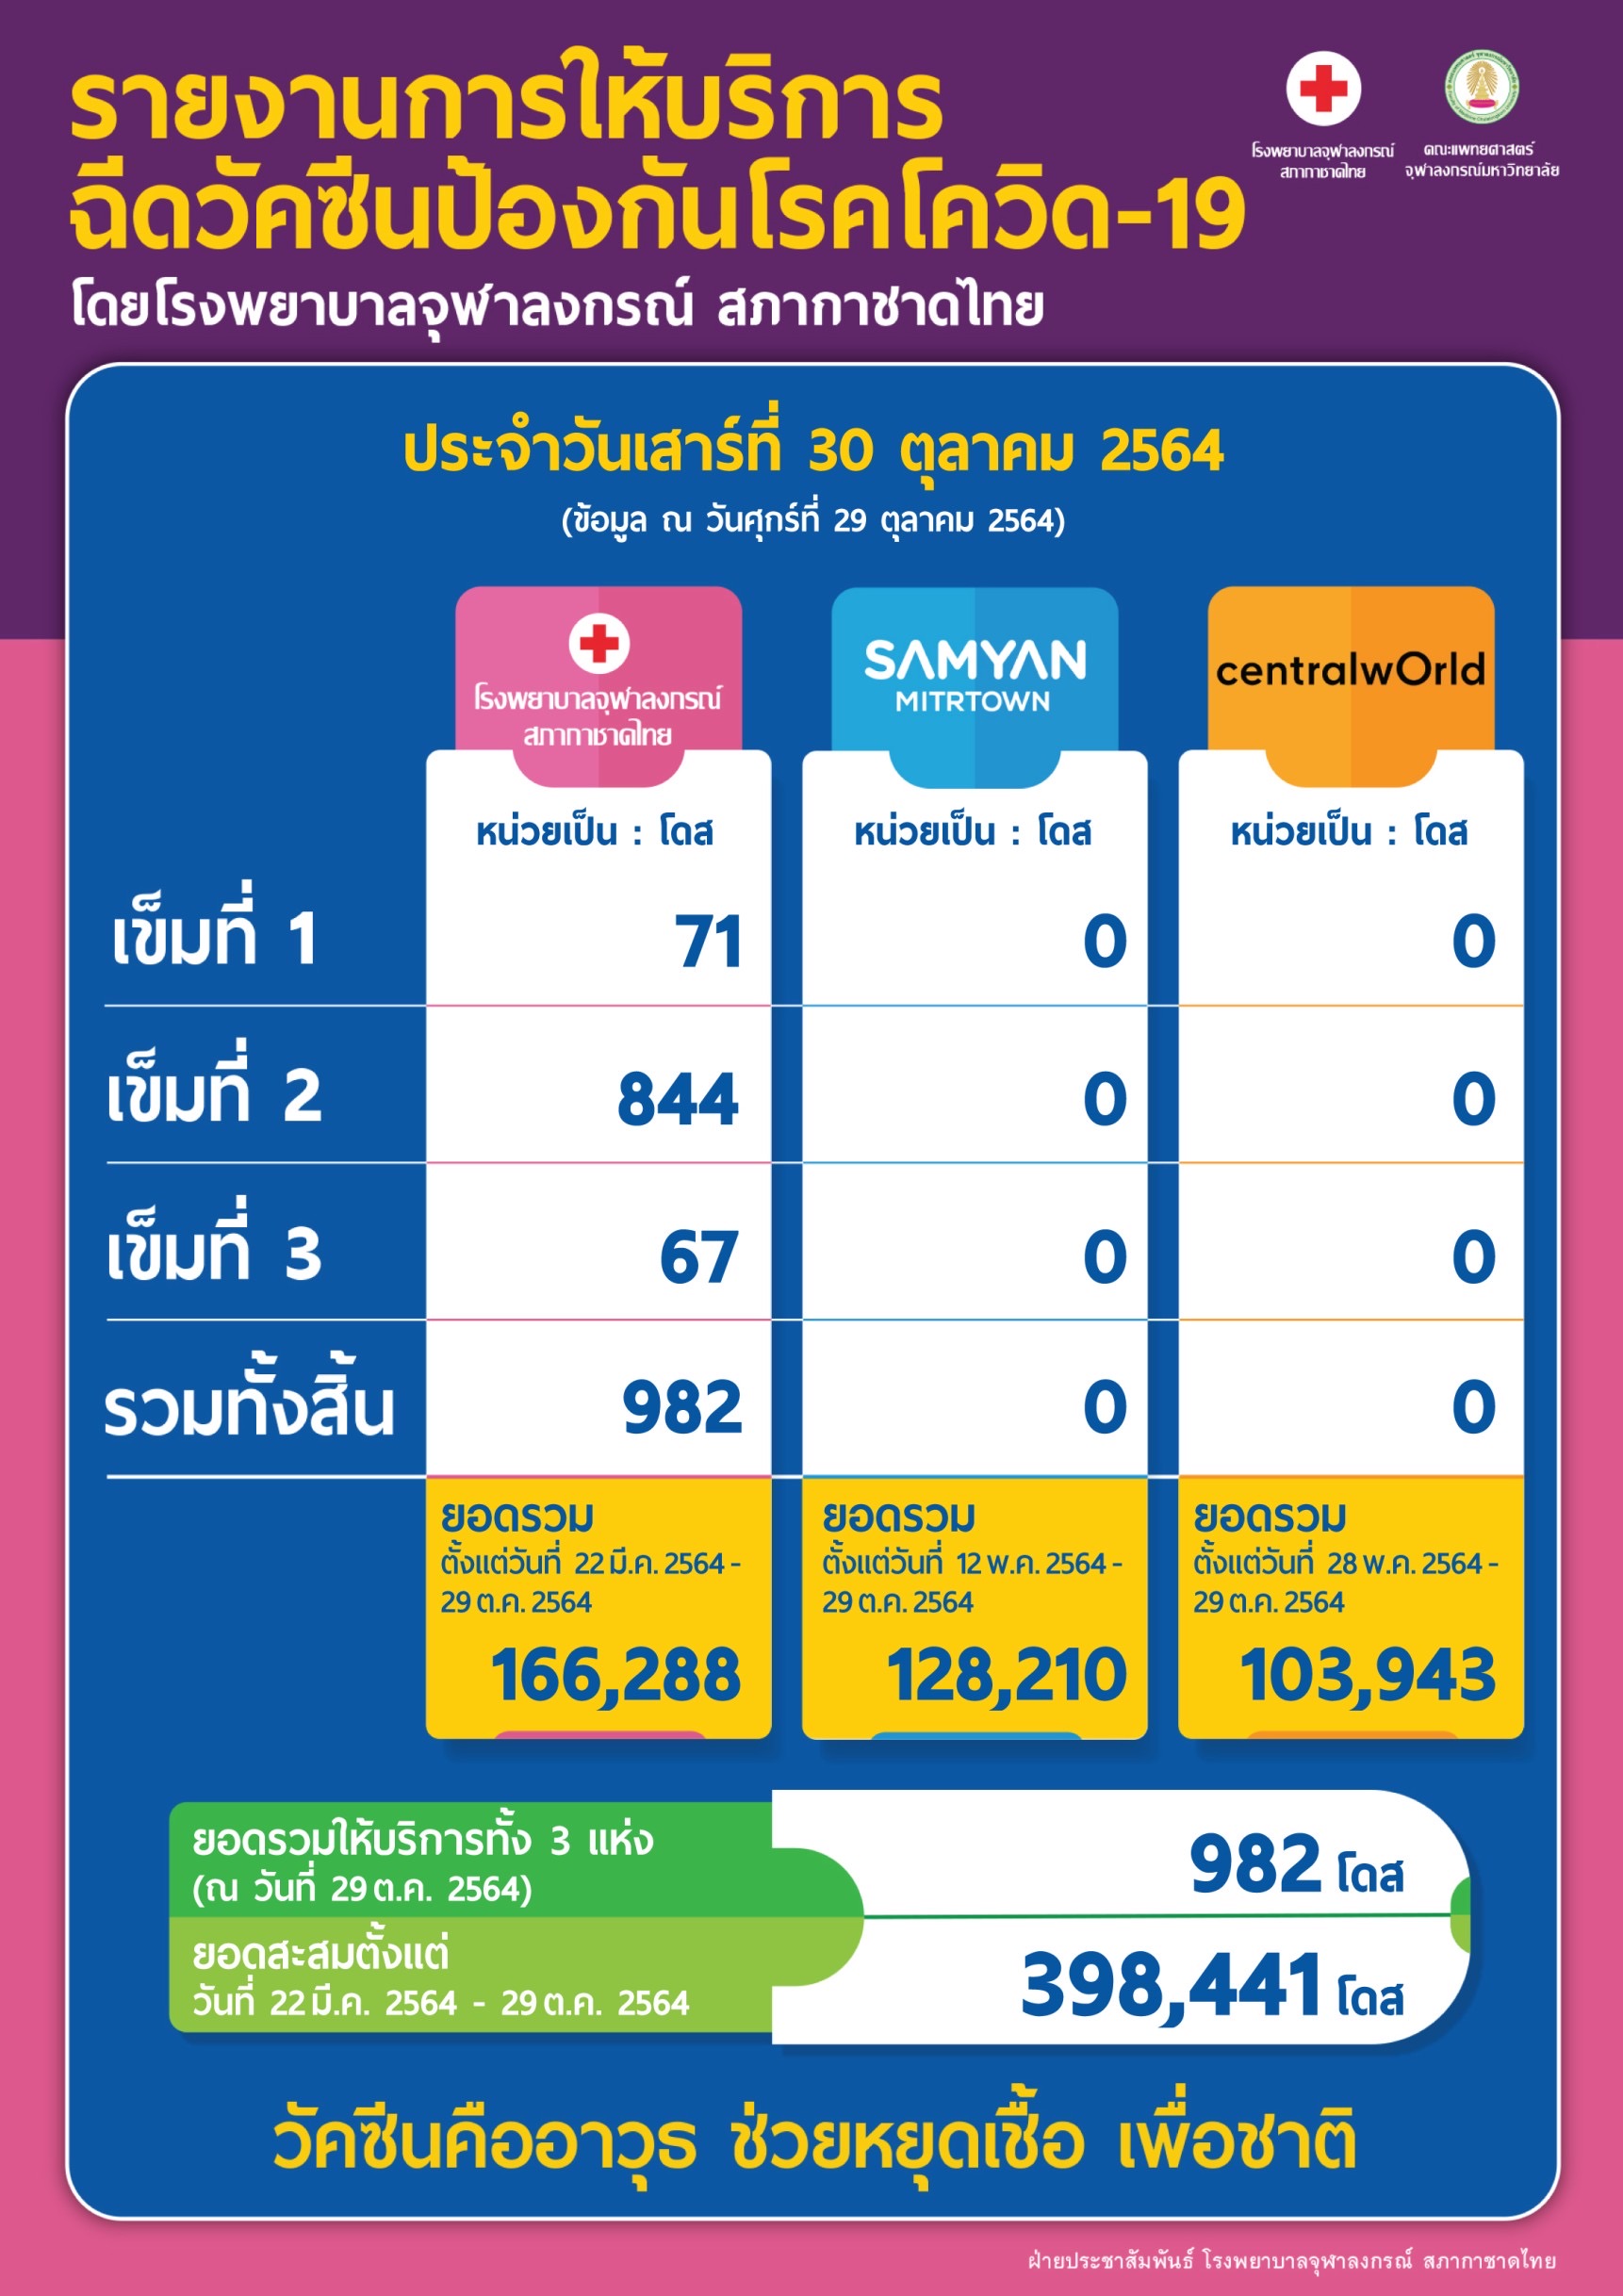 รายงานการให้บริการฉีดวัคซีนป้องกันโรคโควิด-19 โดยโรงพยาบาลจุฬาลงกรณ์ สภากาชาดไทย ประจำวันเสาร์ที่ 30 ตุลาคม 2564